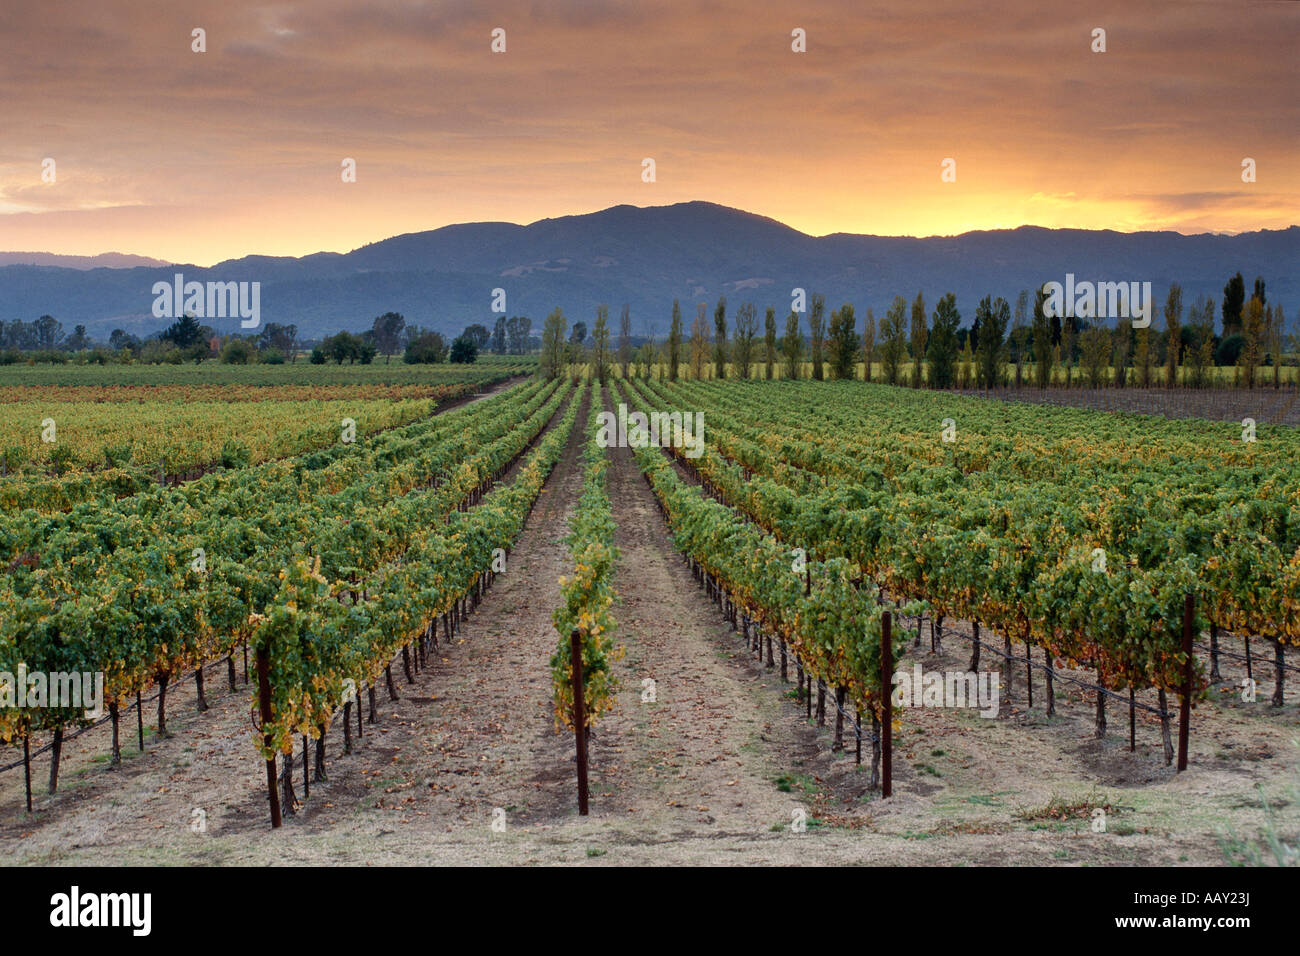 Colorido atardecer en vides y viñedos de la región del vino del valle de Napa de California del Norte en los Estados Unidos horizontal Foto de stock